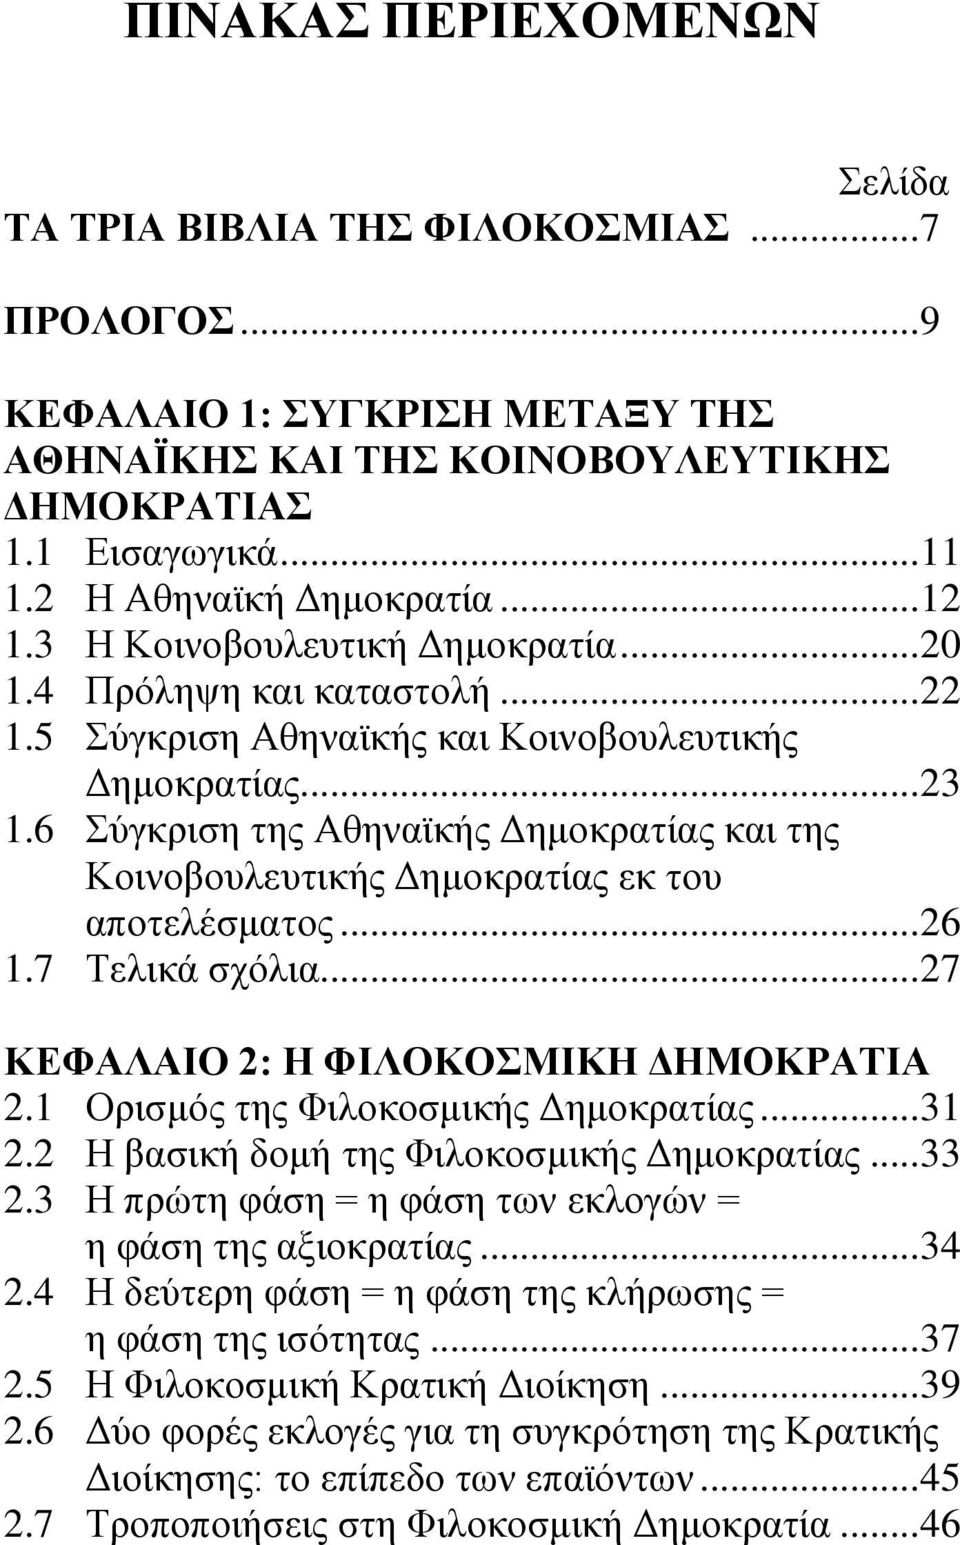 6 Σύγκριση της Αθηναϊκής Δημοκρατίας και της Κοινοβουλευτικής Δημοκρατίας εκ του αποτελέσματος... 26 1.7 Τελικά σχόλια... 27 ΚΕΦΑΛΑΙΟ 2: Η ΦΙΛΟΚΟΣΜΙΚΗ ΔΗΜΟΚΡΑΤΙΑ 2.